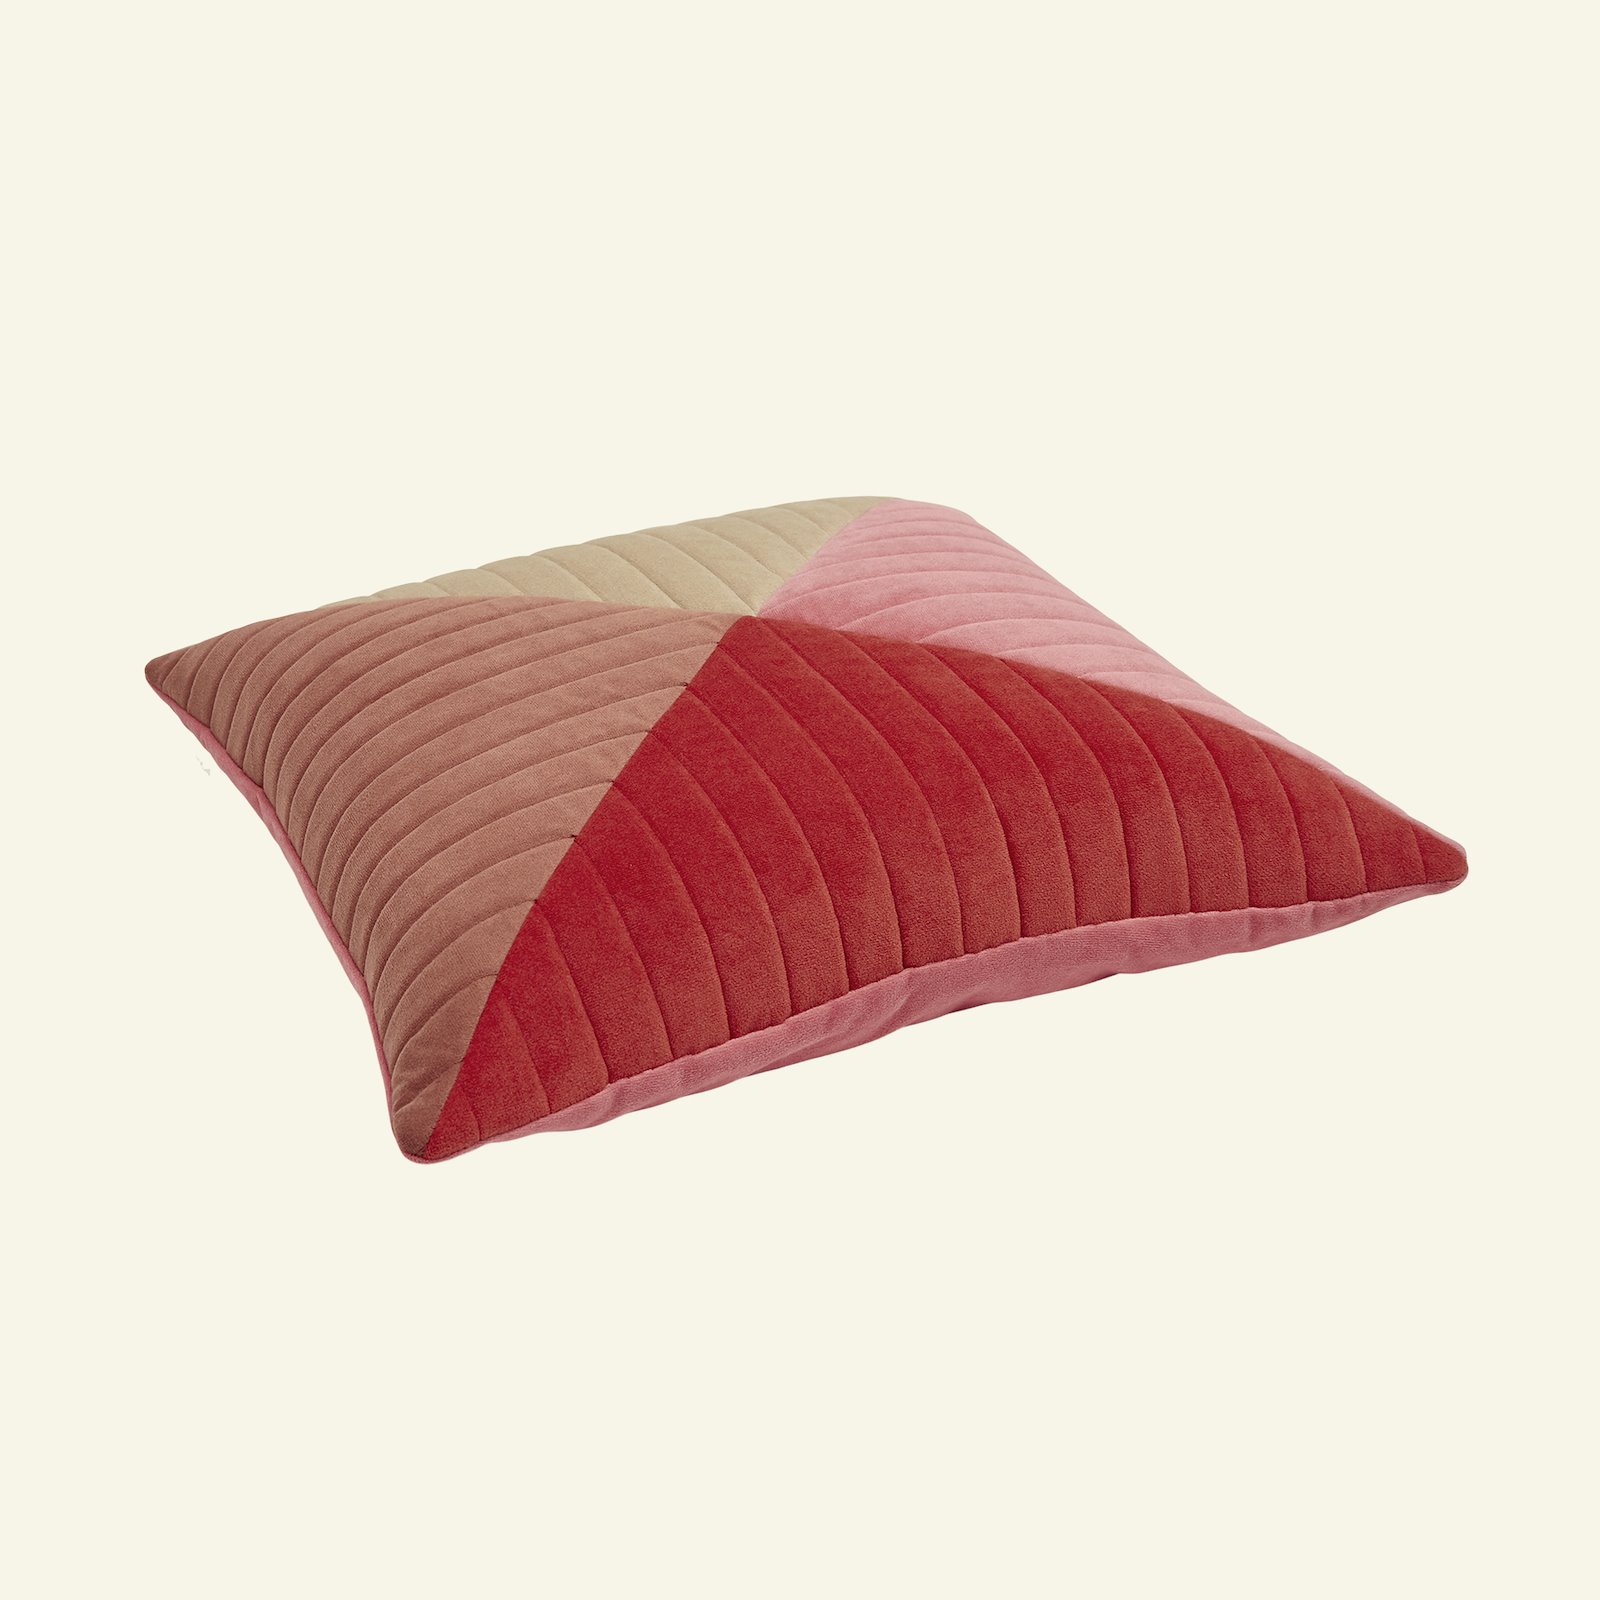 Upholstery velvet bright red 824158_823644_826257_826258_sskit